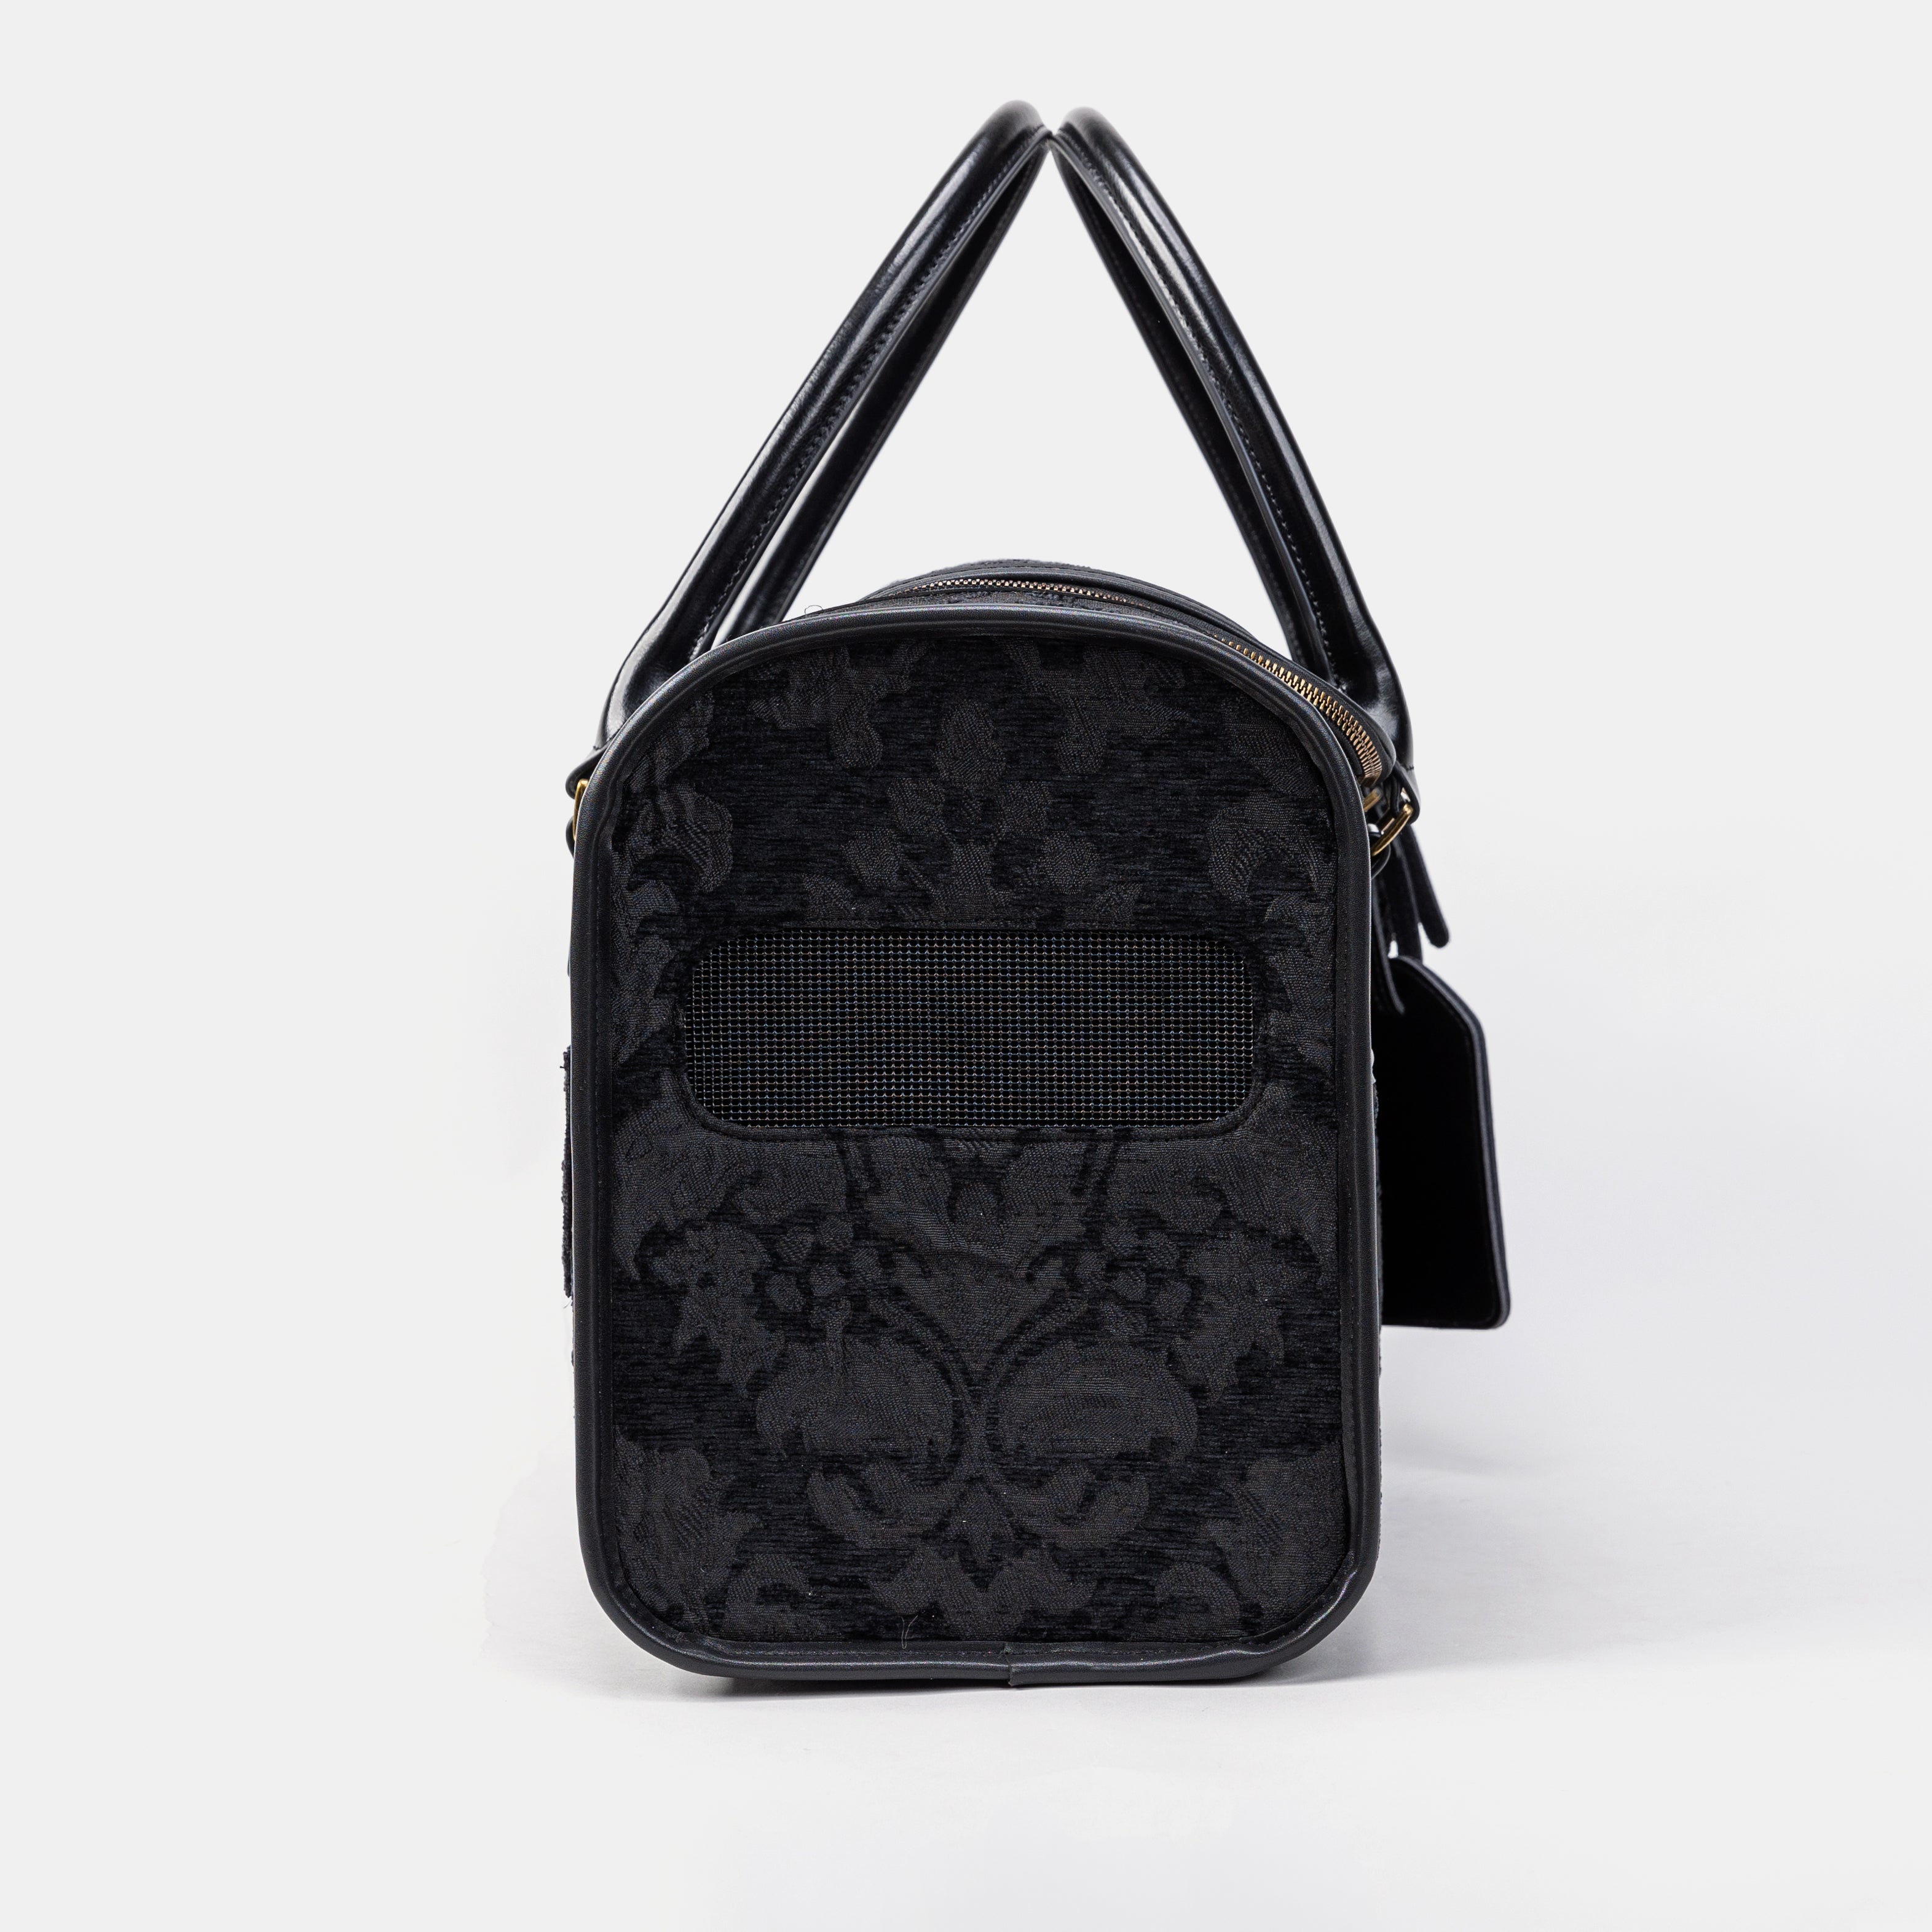 Travel Dog Carrier Bag Victorian Blossom Black Side Mesh